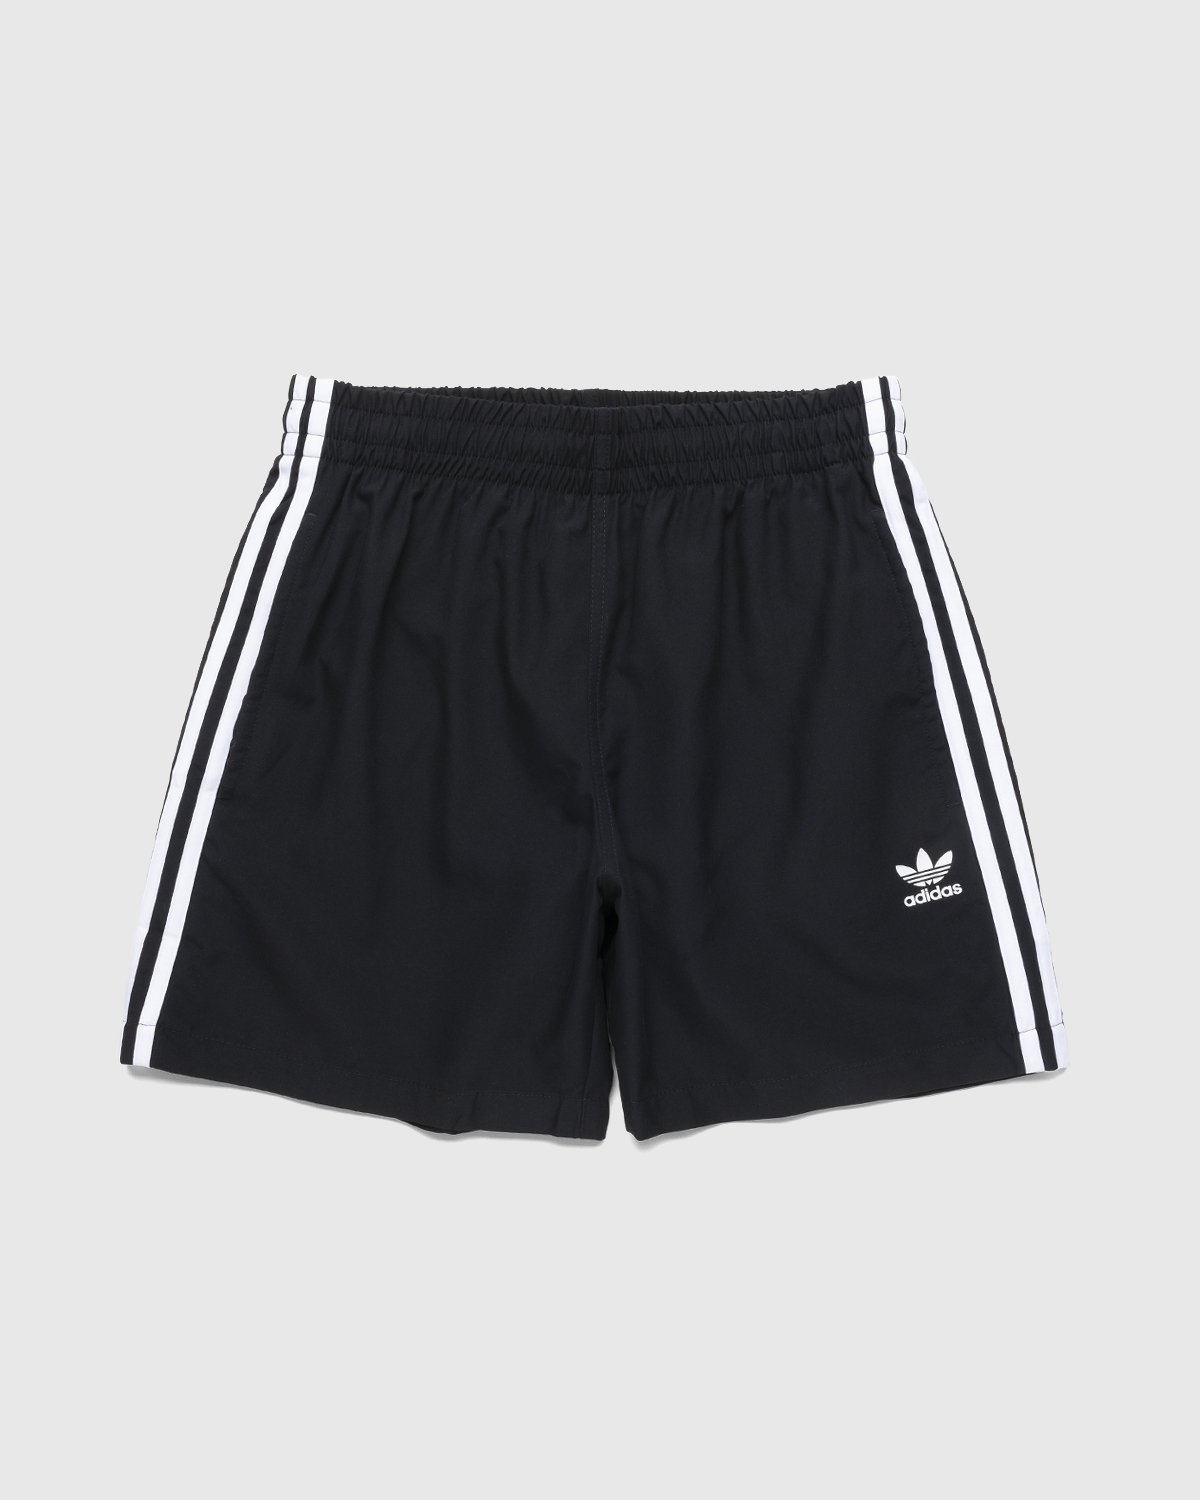 Adidas – Classics 3-Stripes Swim Black Highsnobiety